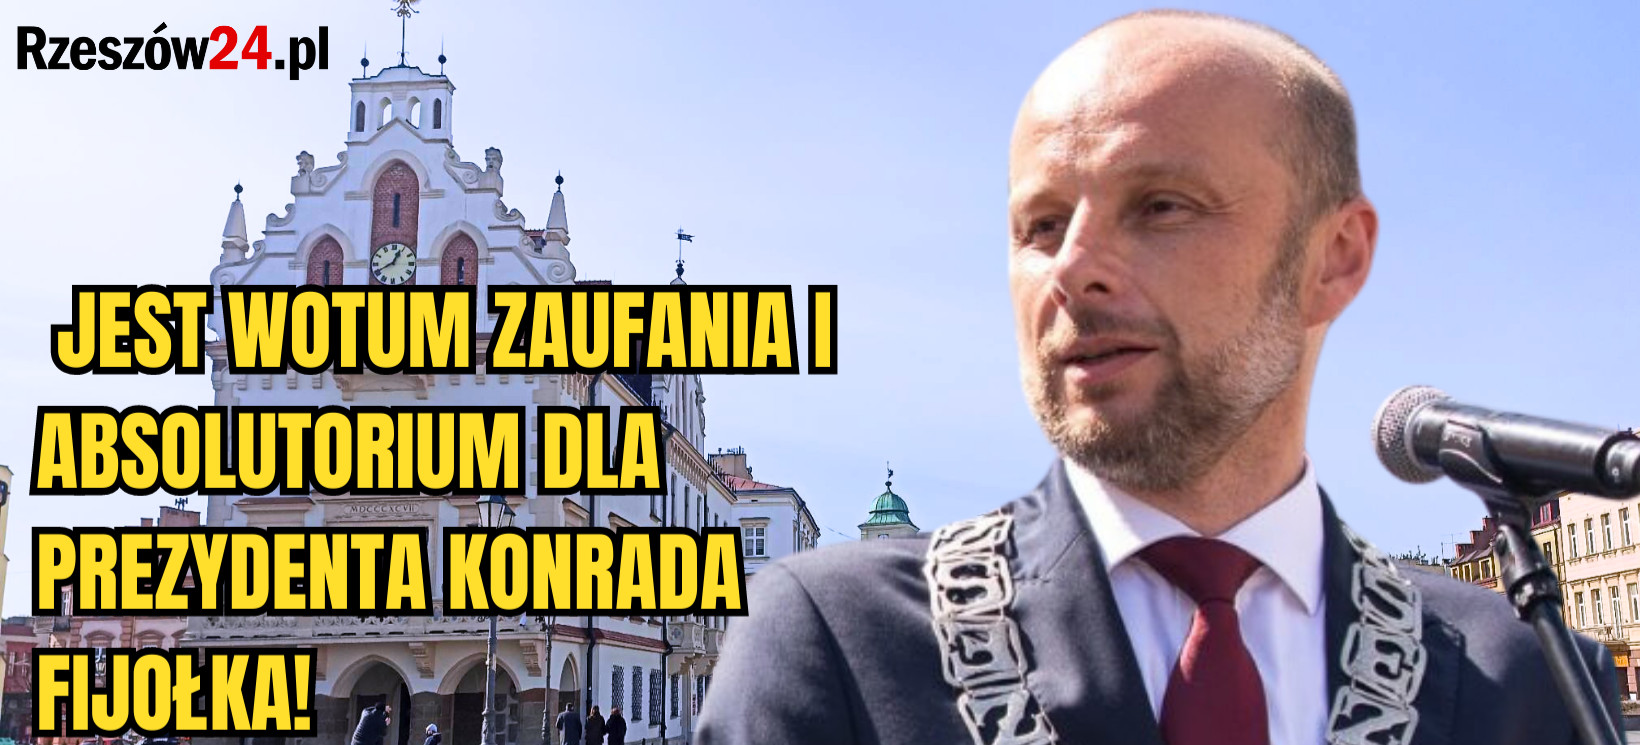 RZESZÓW. Prezydent Konrad Fijołek uzyskał wotum zaufania i absolutorium!